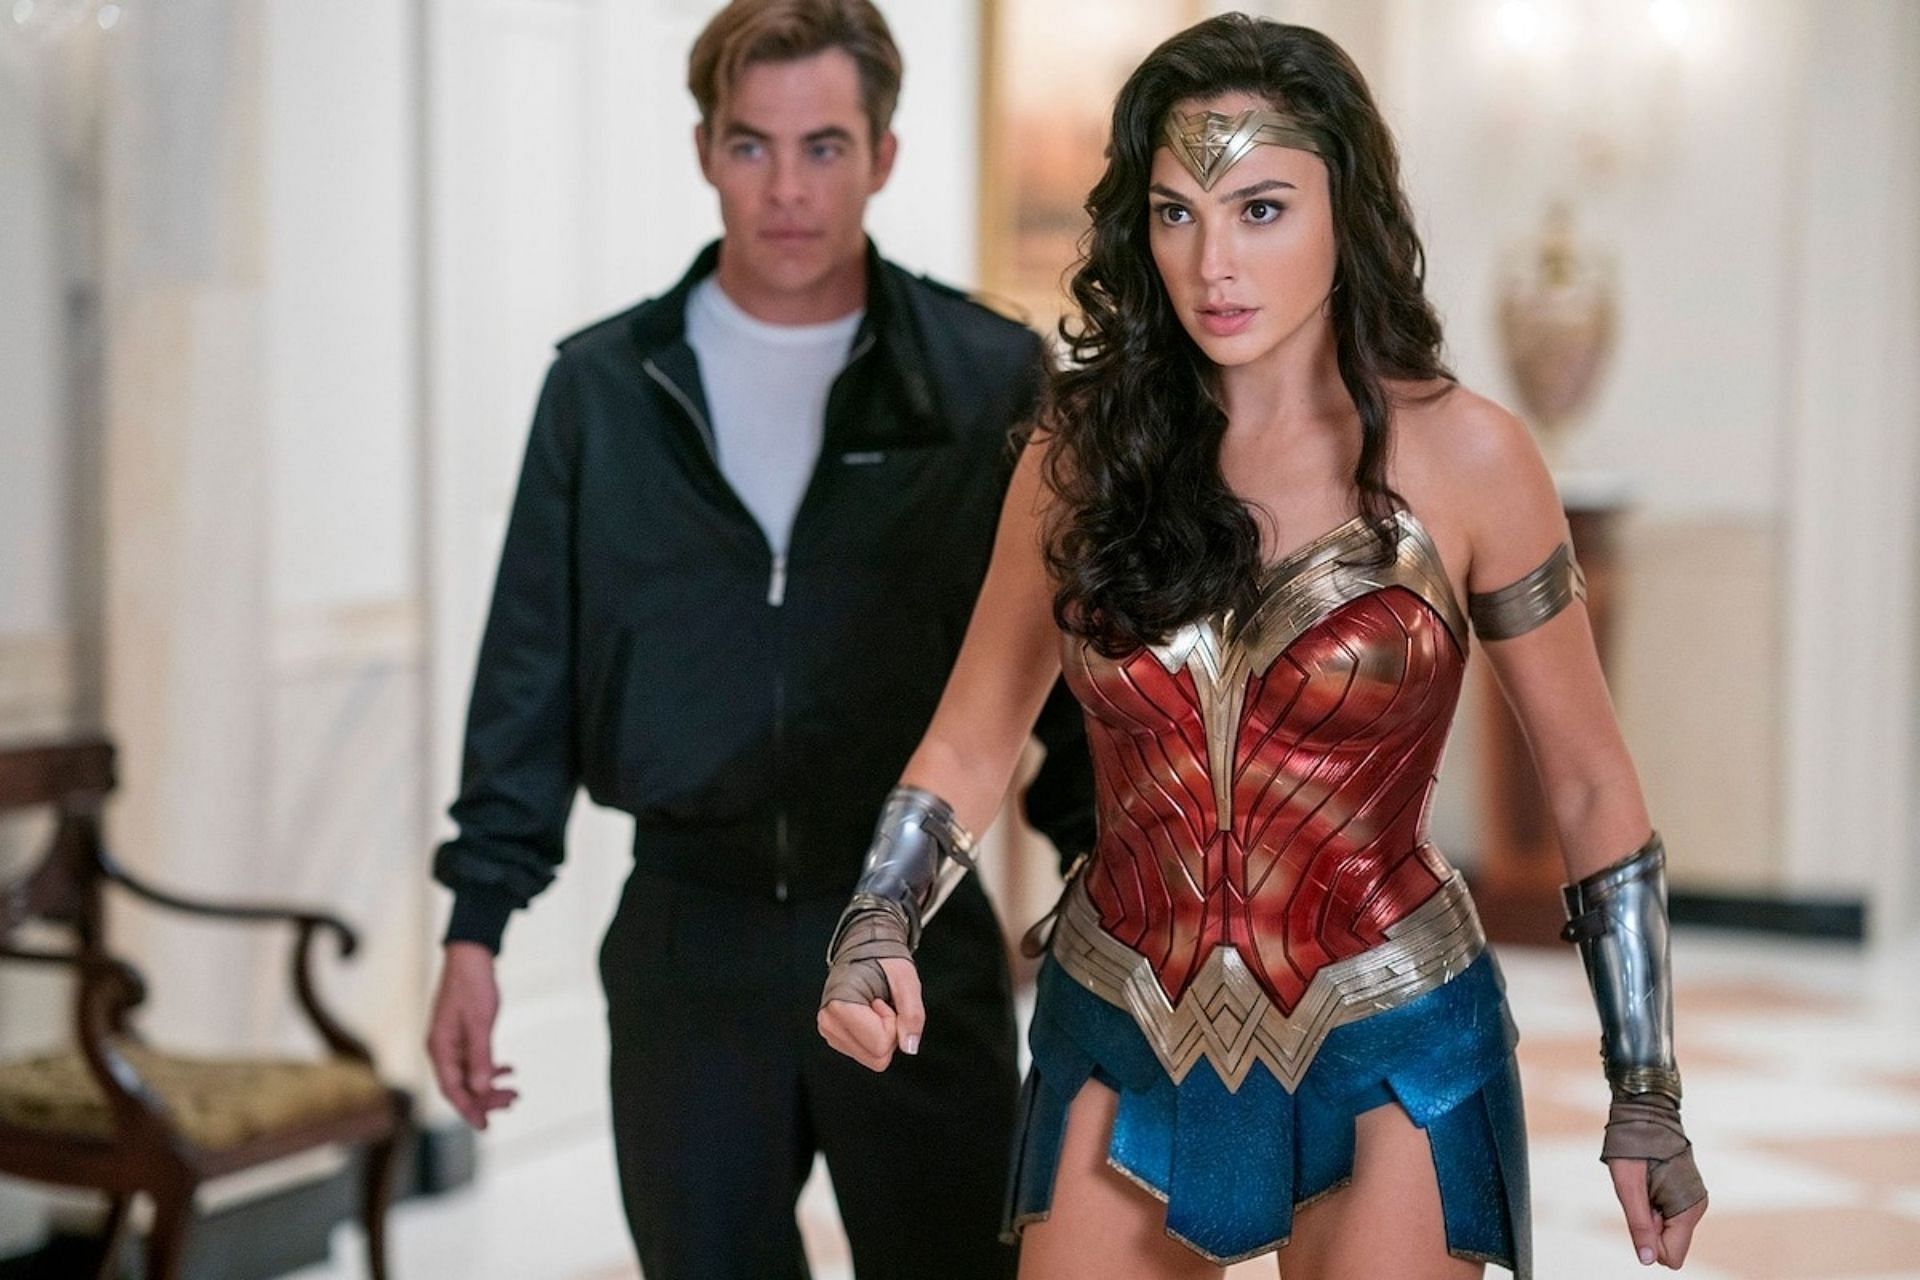 Wonder Woman and Steve Trevor in Wonder Woman, 2017 (Image via Warner Bros.)